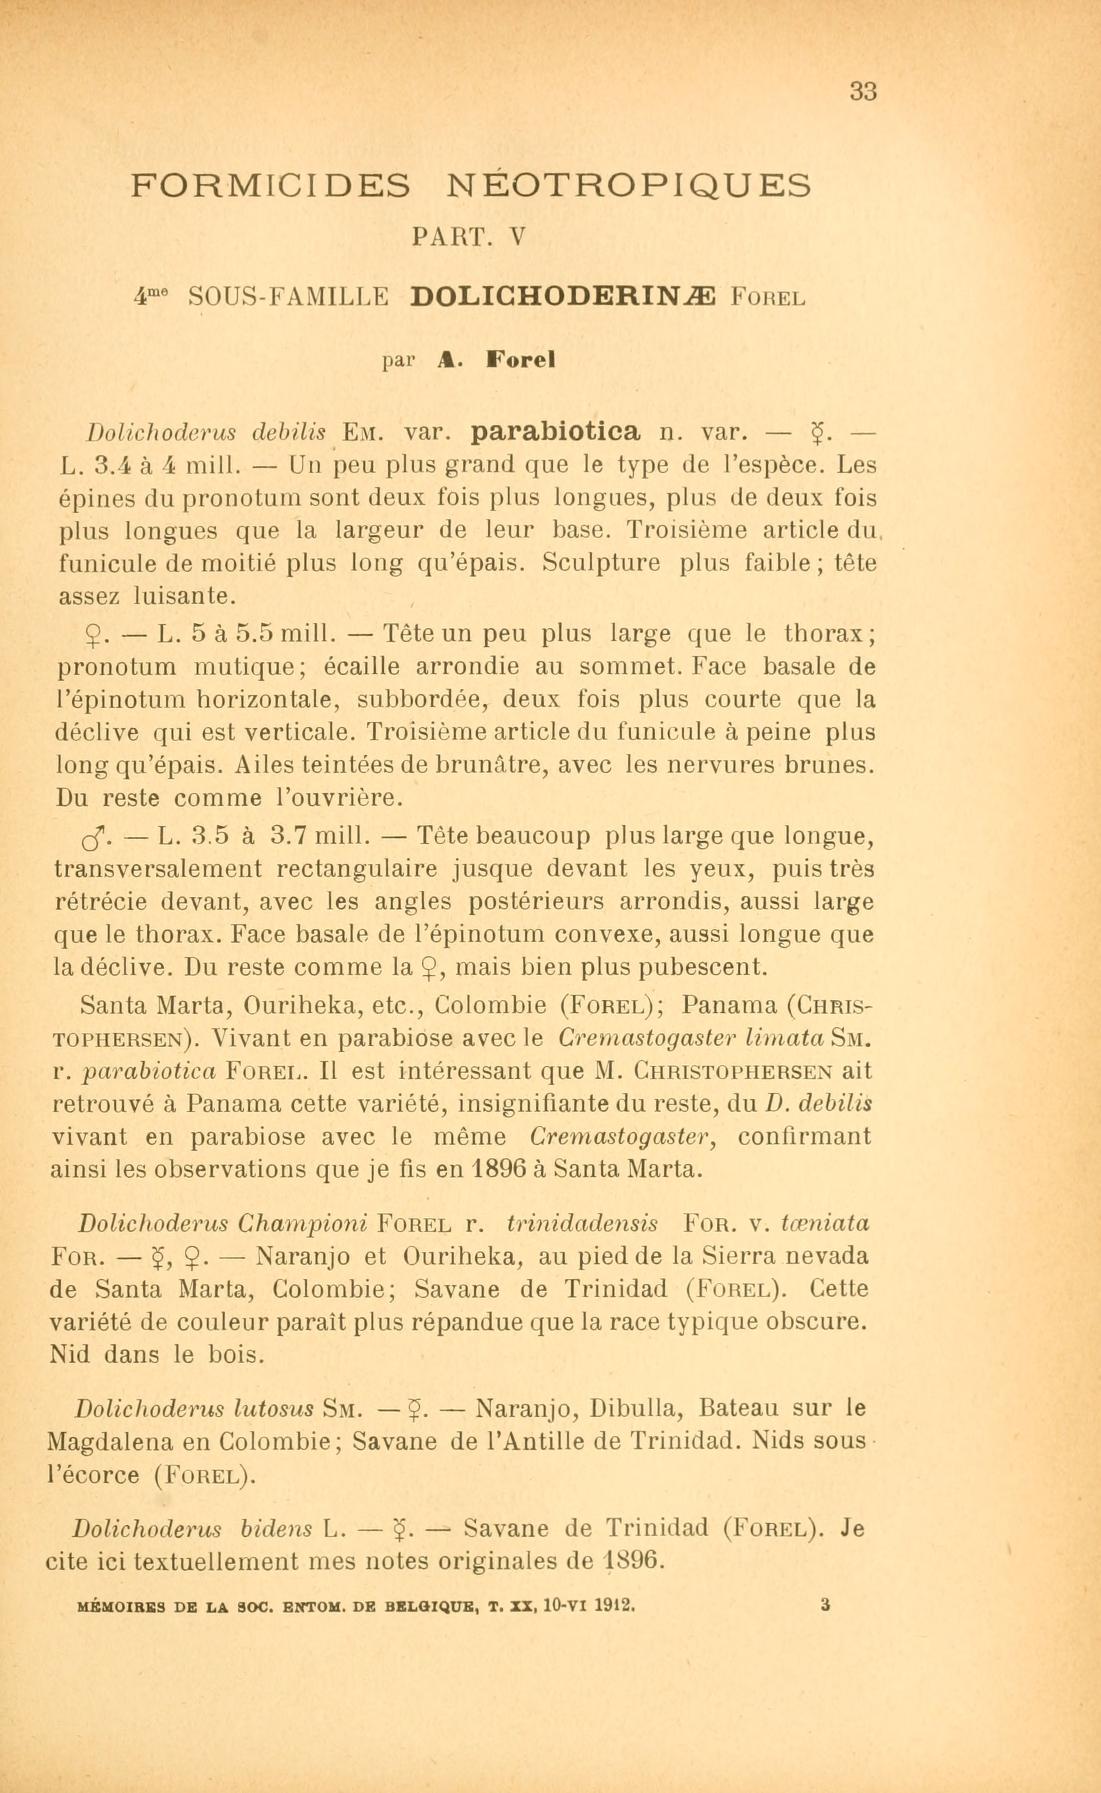 Media type: text; Forel 1912 Description: Formicides néotropiques. Part V. 4me sous-famille Dolichoderinae Forel;